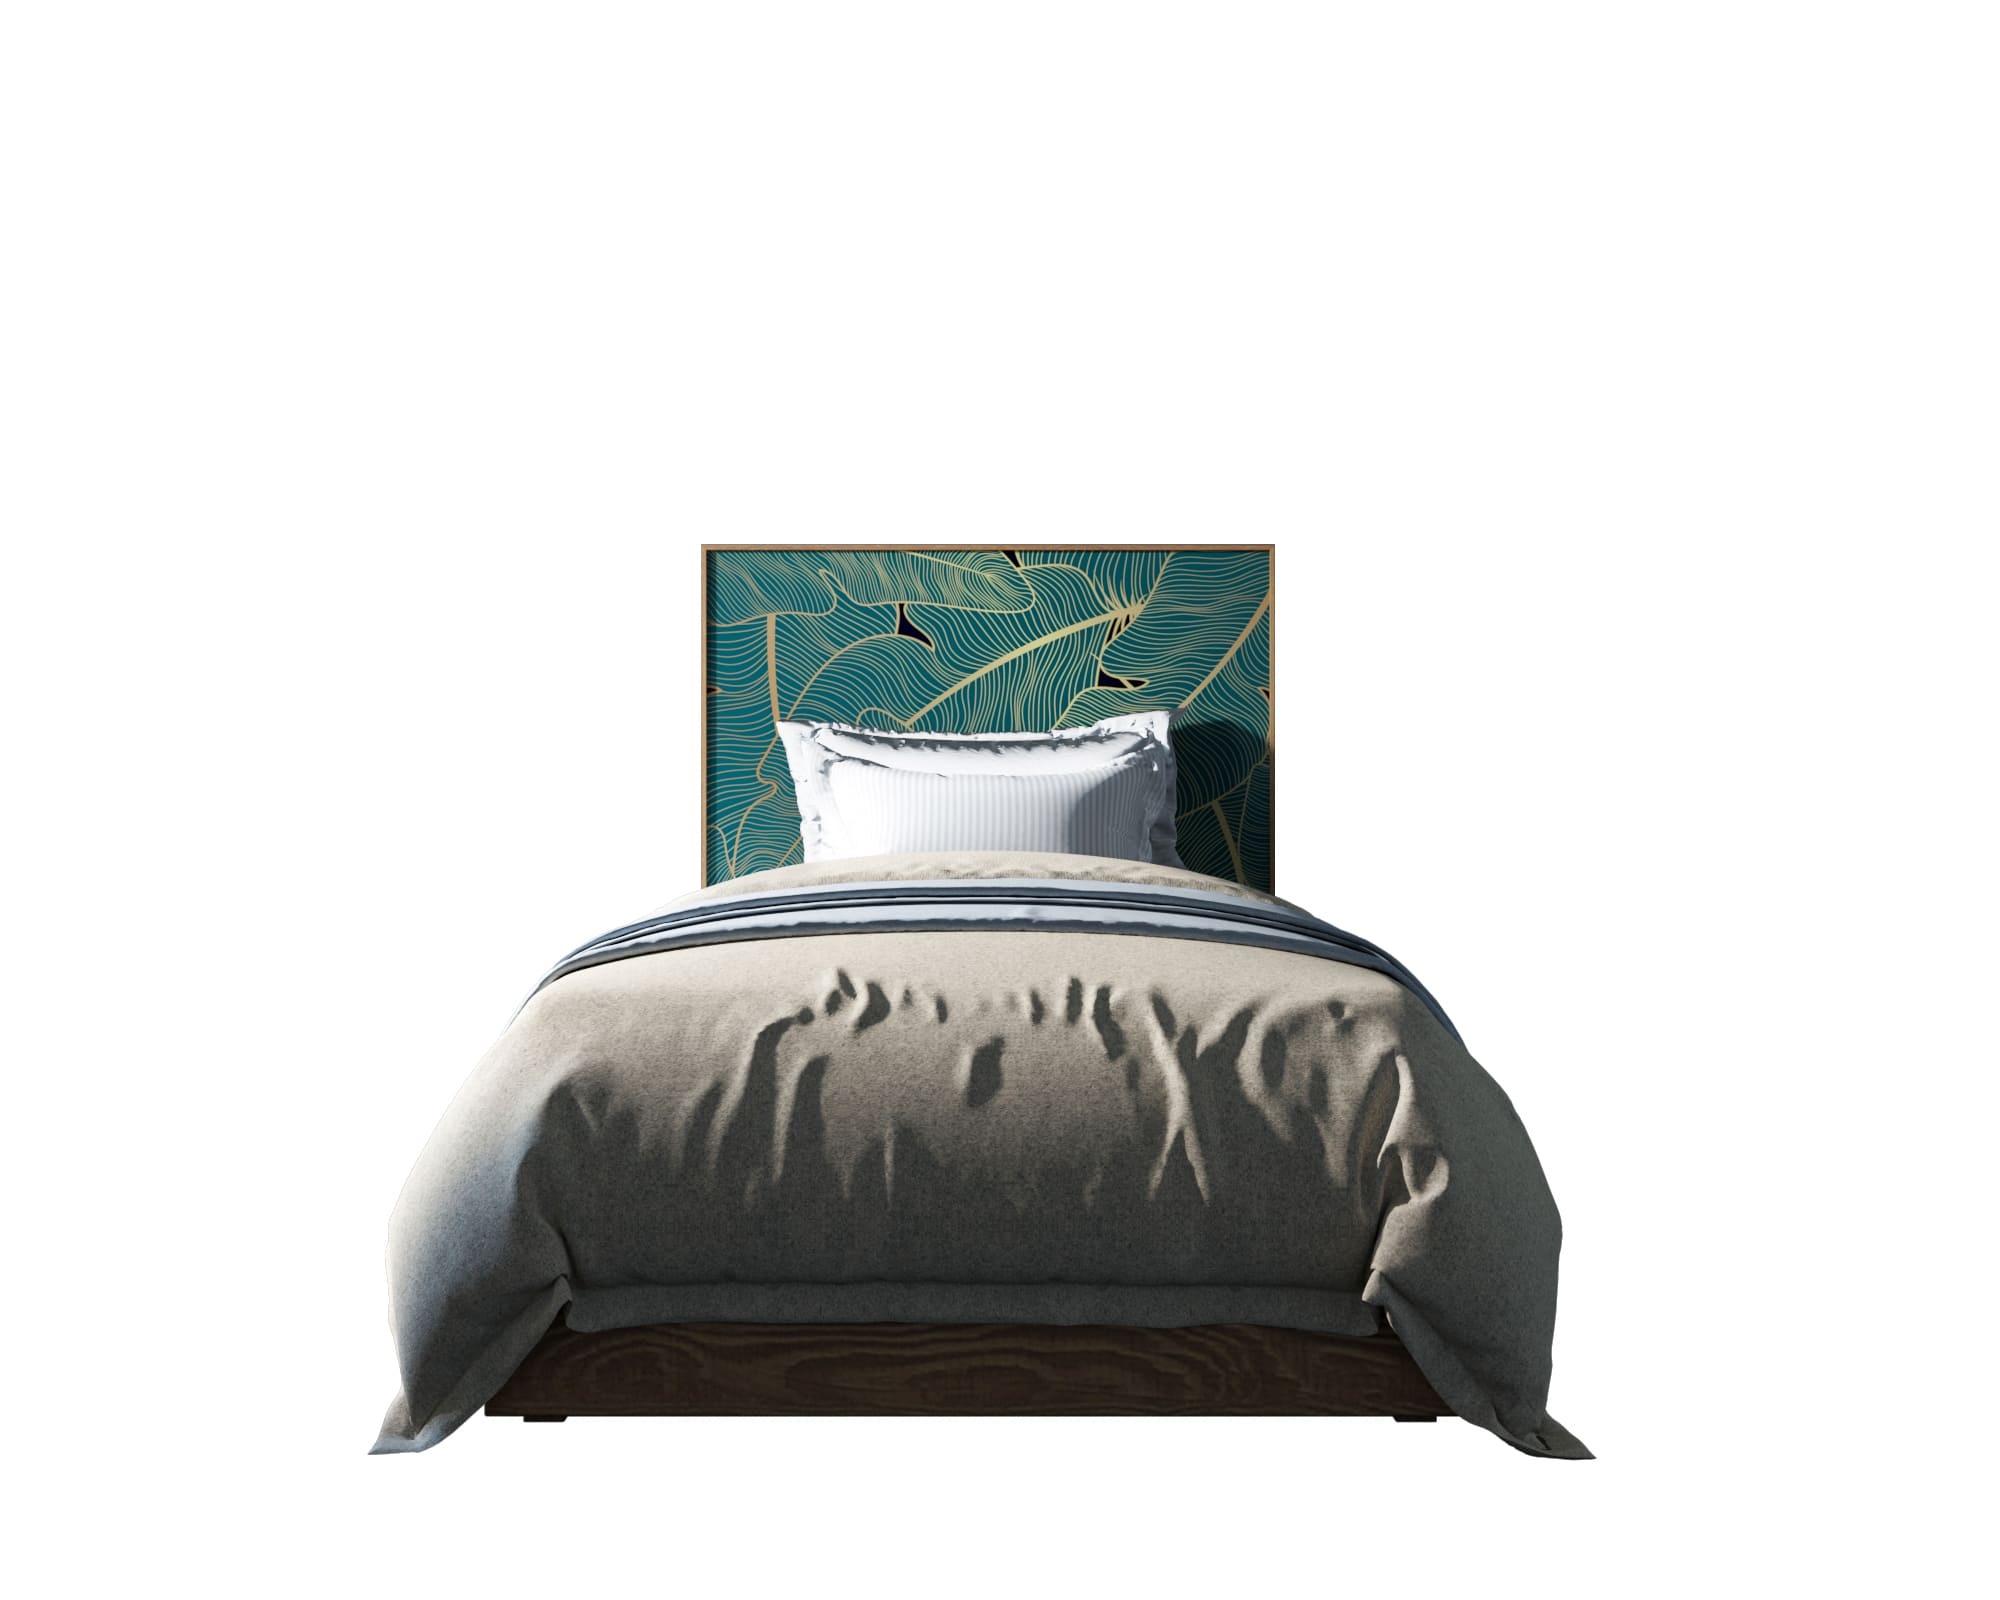 Кровать berber etg-home зеленый 120x140x200 см.